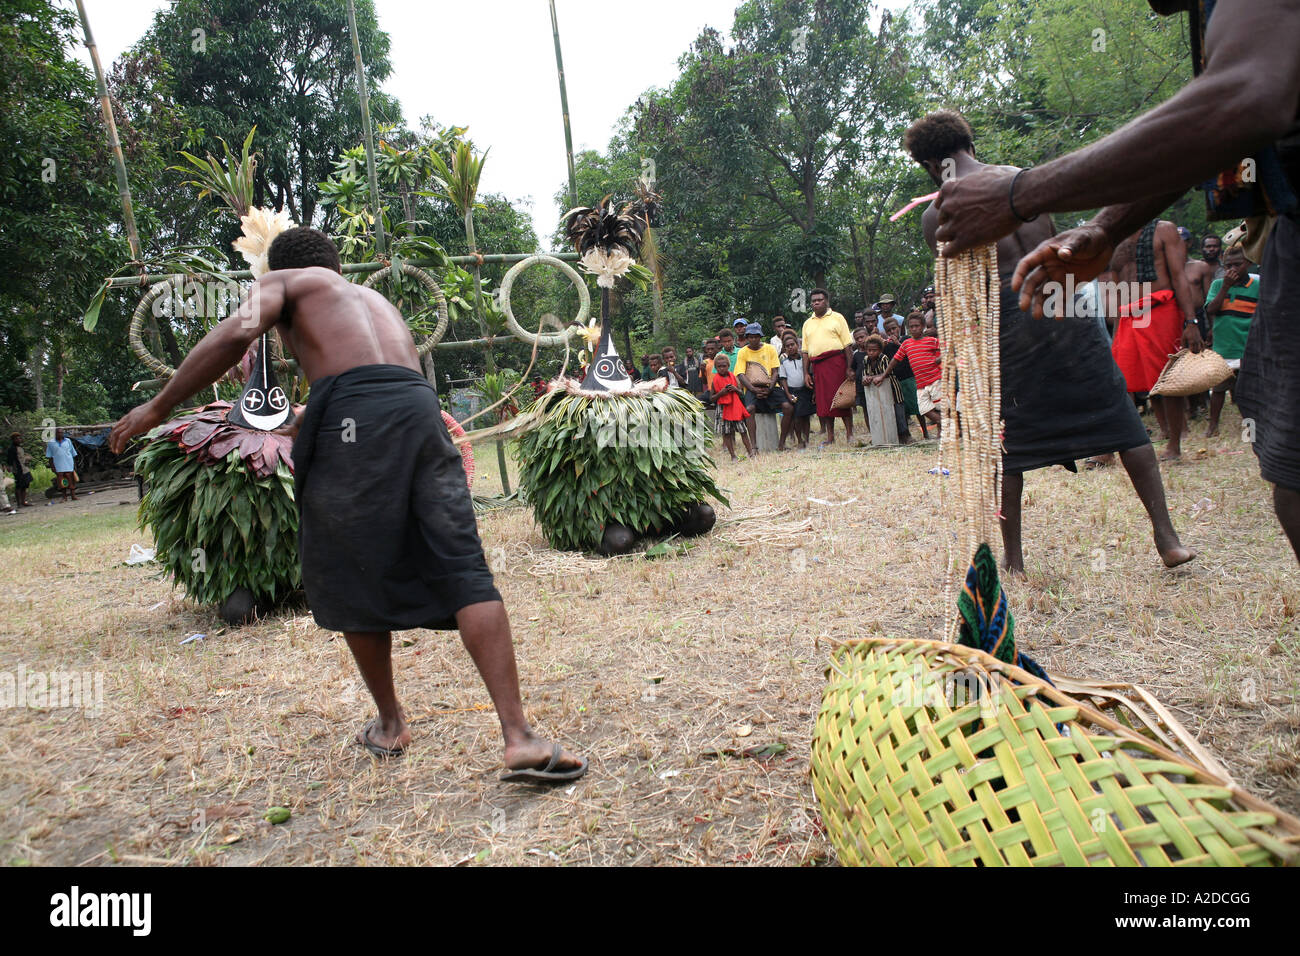 Les hommes jettent de l'argent à Tubuans shell lors d'une cérémonie de la mort Tolai, Matupit Island, East New Britain, Papouasie Nouvelle Guinée Banque D'Images